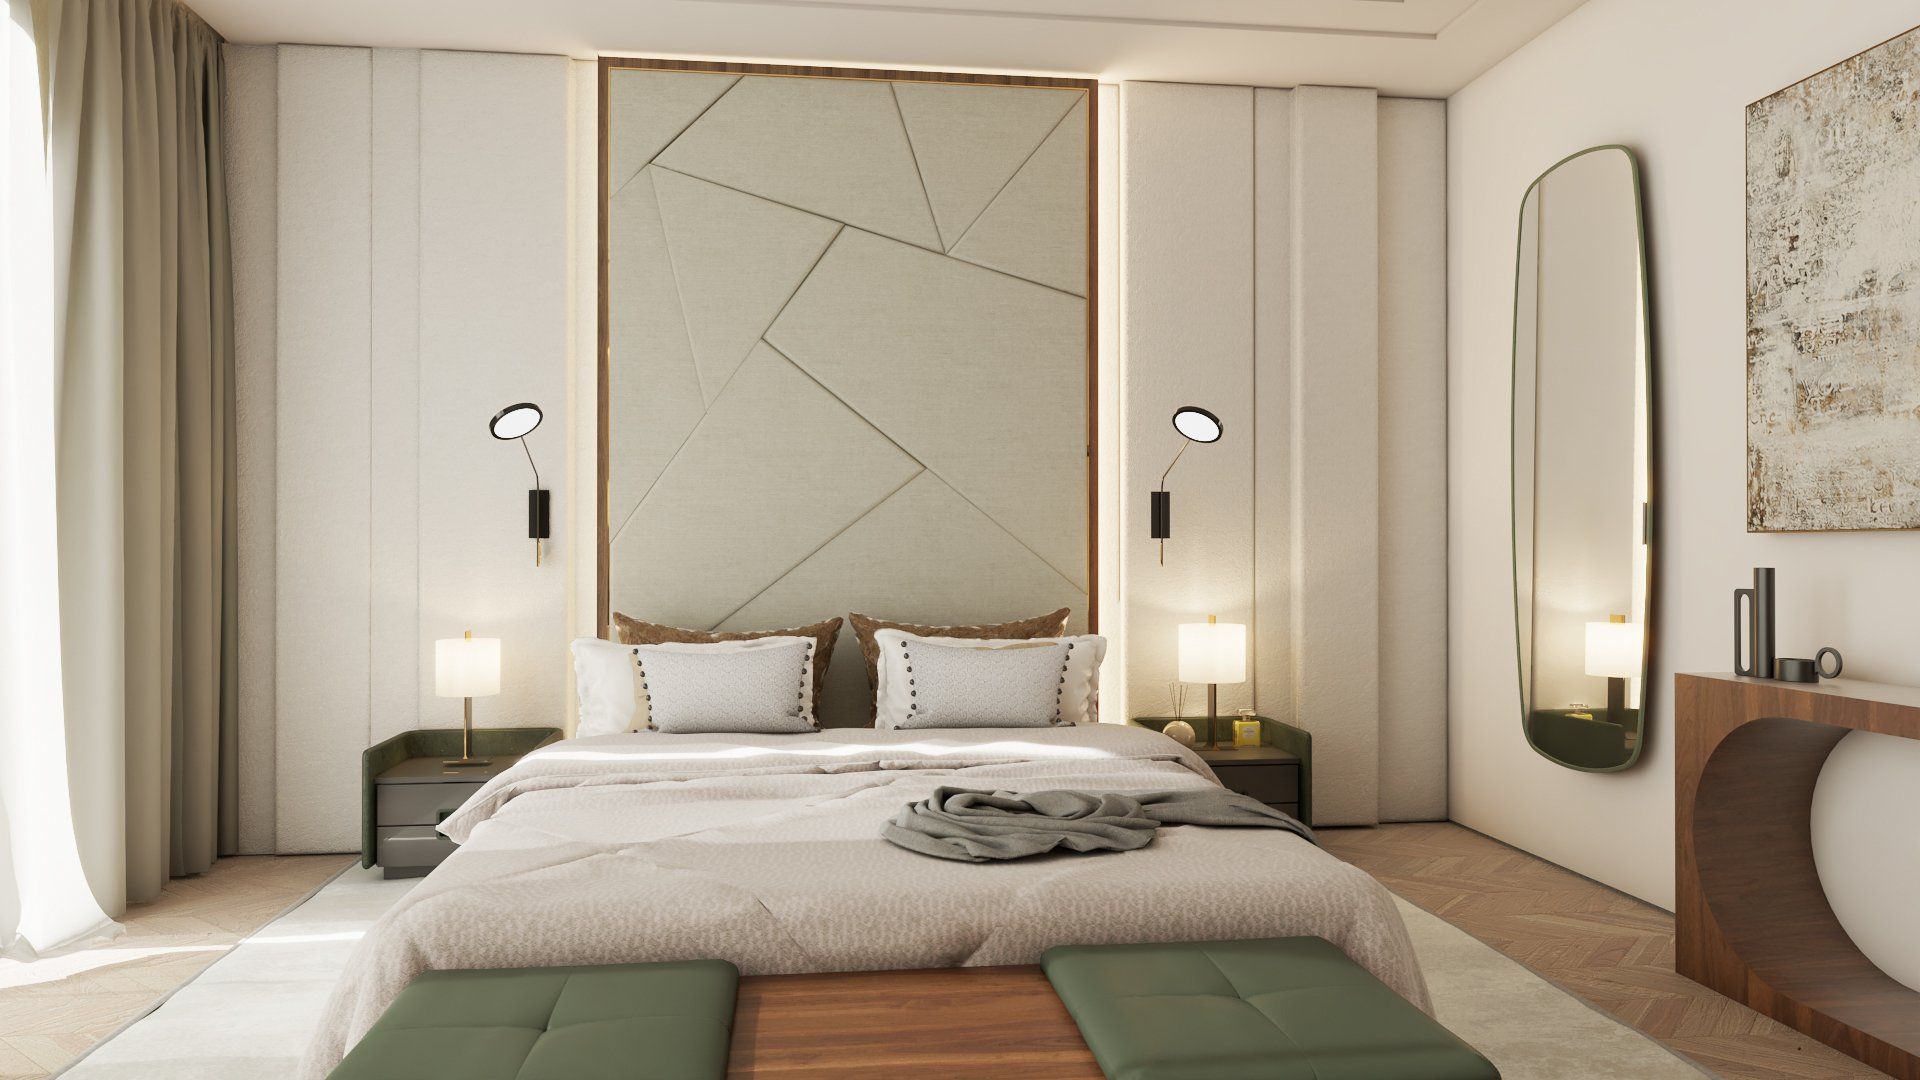 Luxury bedroom design Surrey
